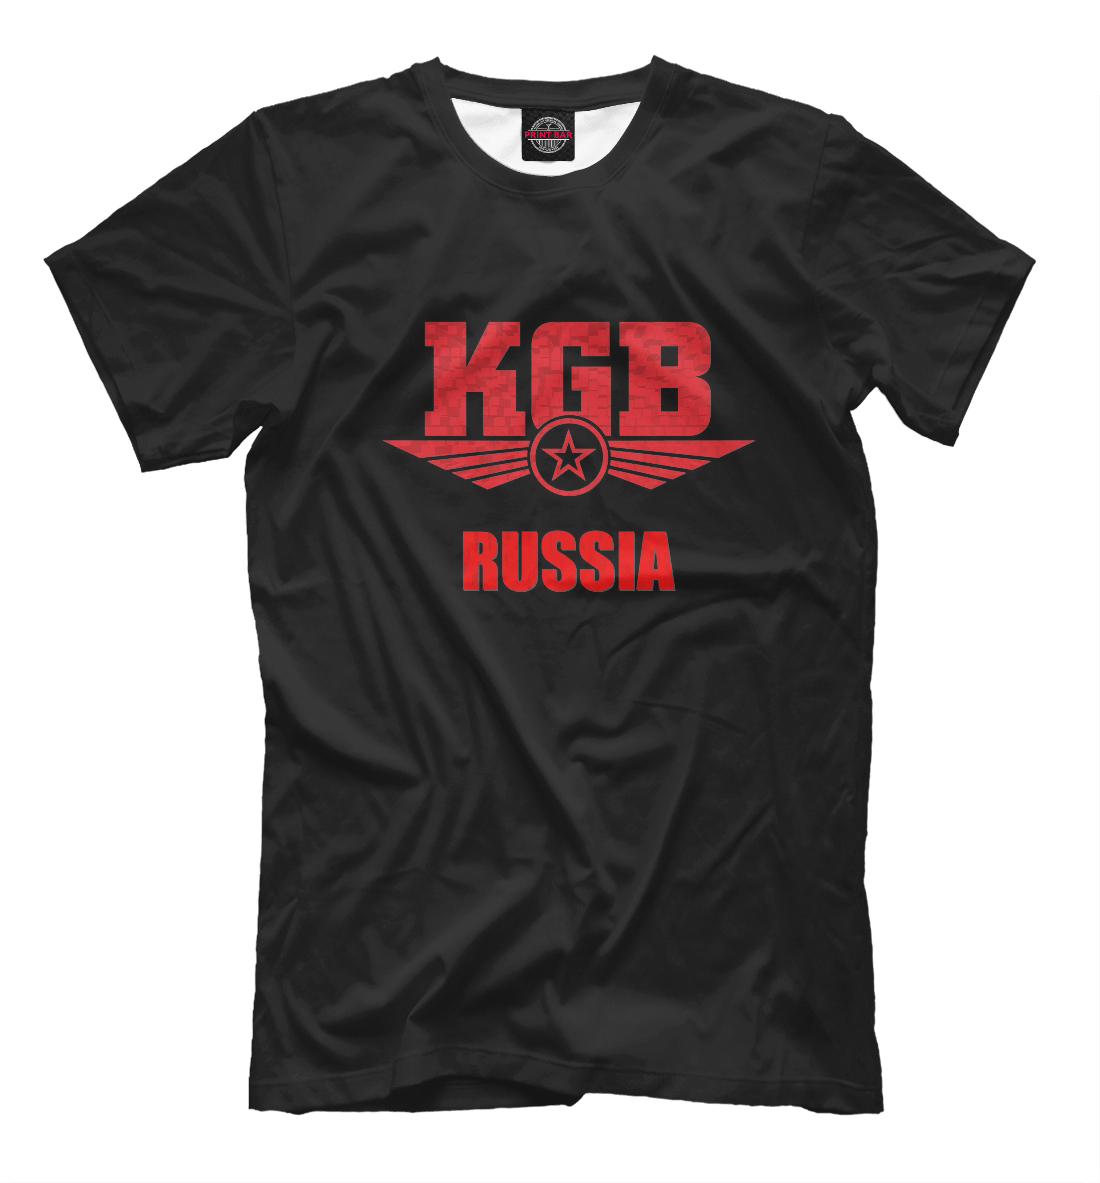 Футболка КГБ для мужчин, артикул: PGR-376106-fut-2mp